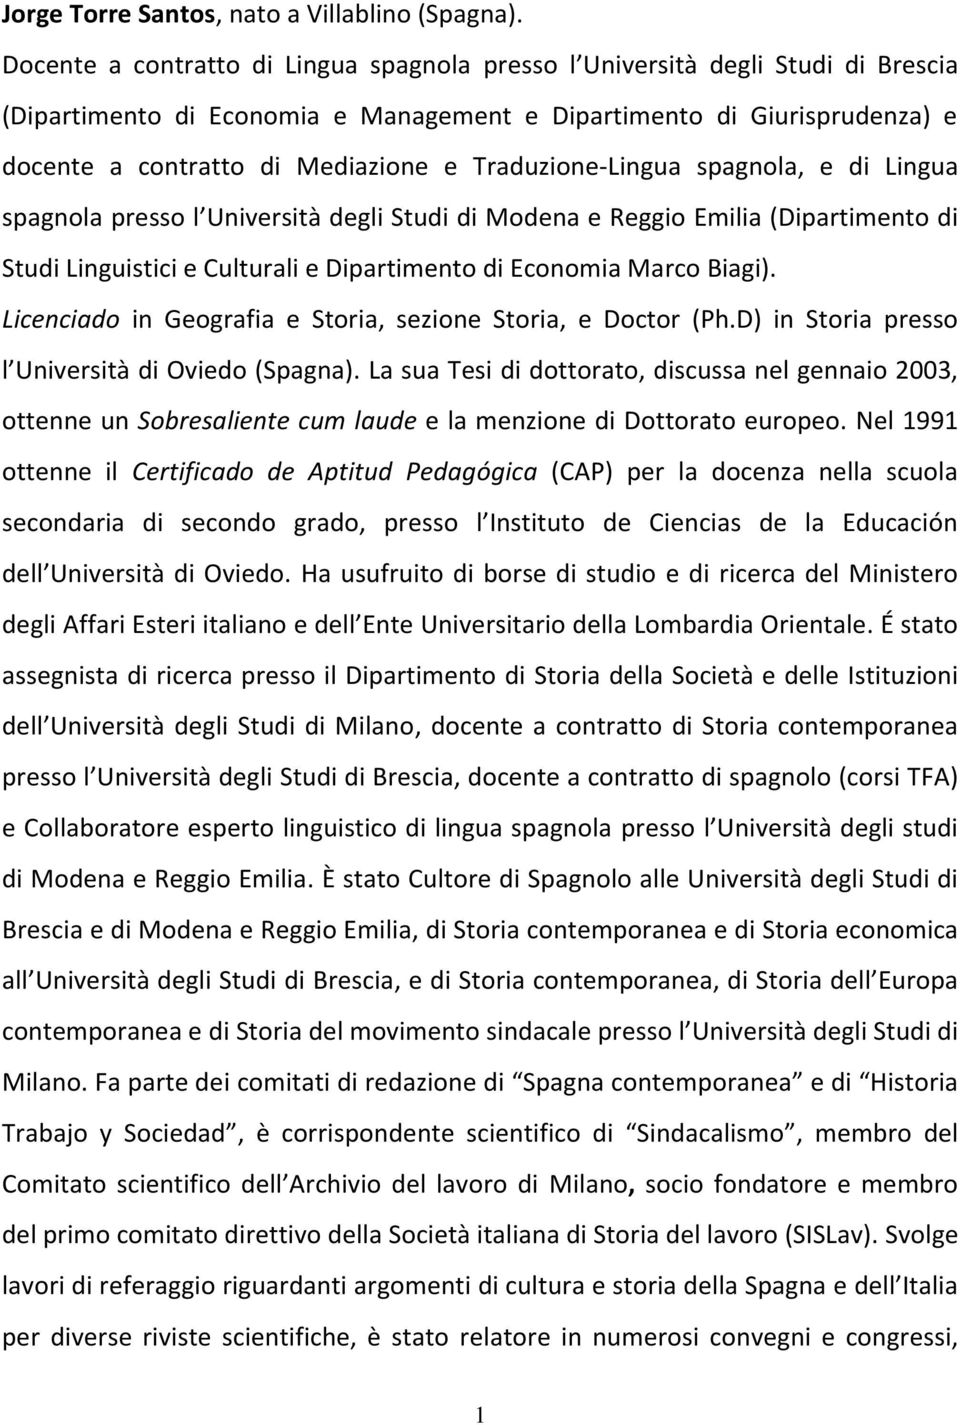 Traduzione-Lingua spagnola, e di Lingua spagnola presso l Università degli Studi di Modena e Reggio Emilia (Dipartimento di Studi Linguistici e Culturali e Dipartimento di Economia Marco Biagi).